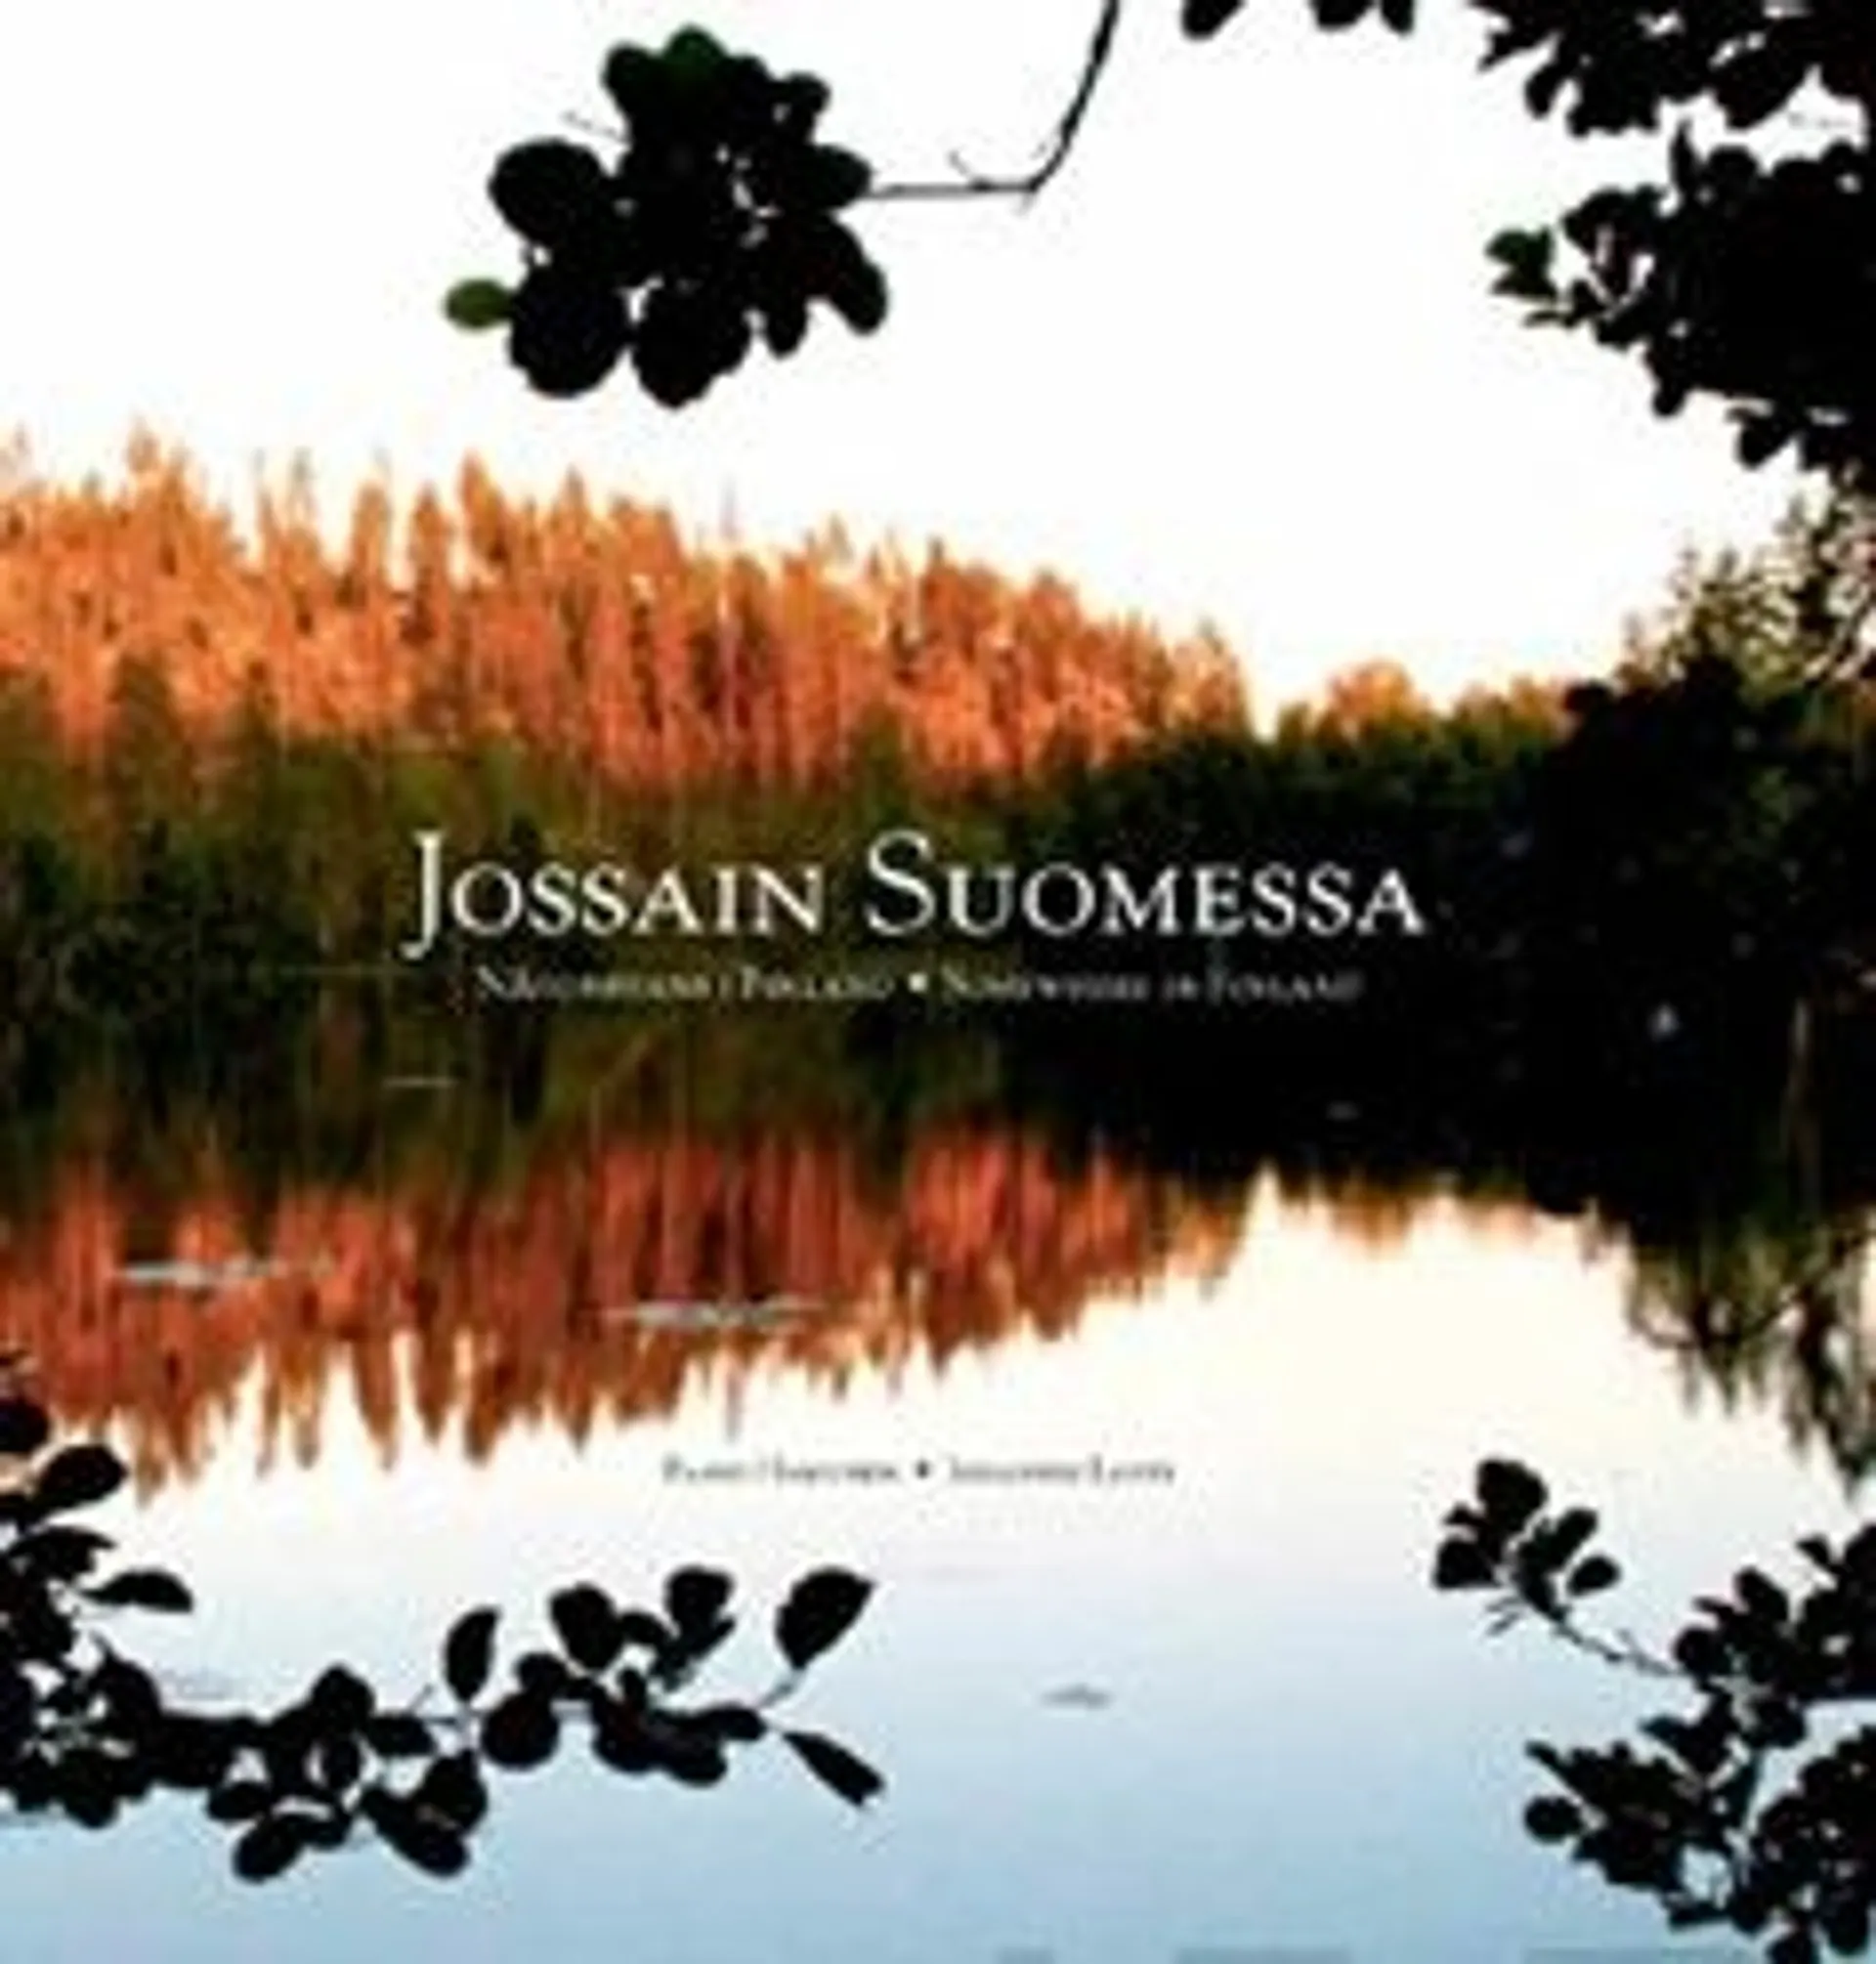 Rosenqvist, Jossain Suomessa - Någonstans i Finland - Somewhwere in Finland